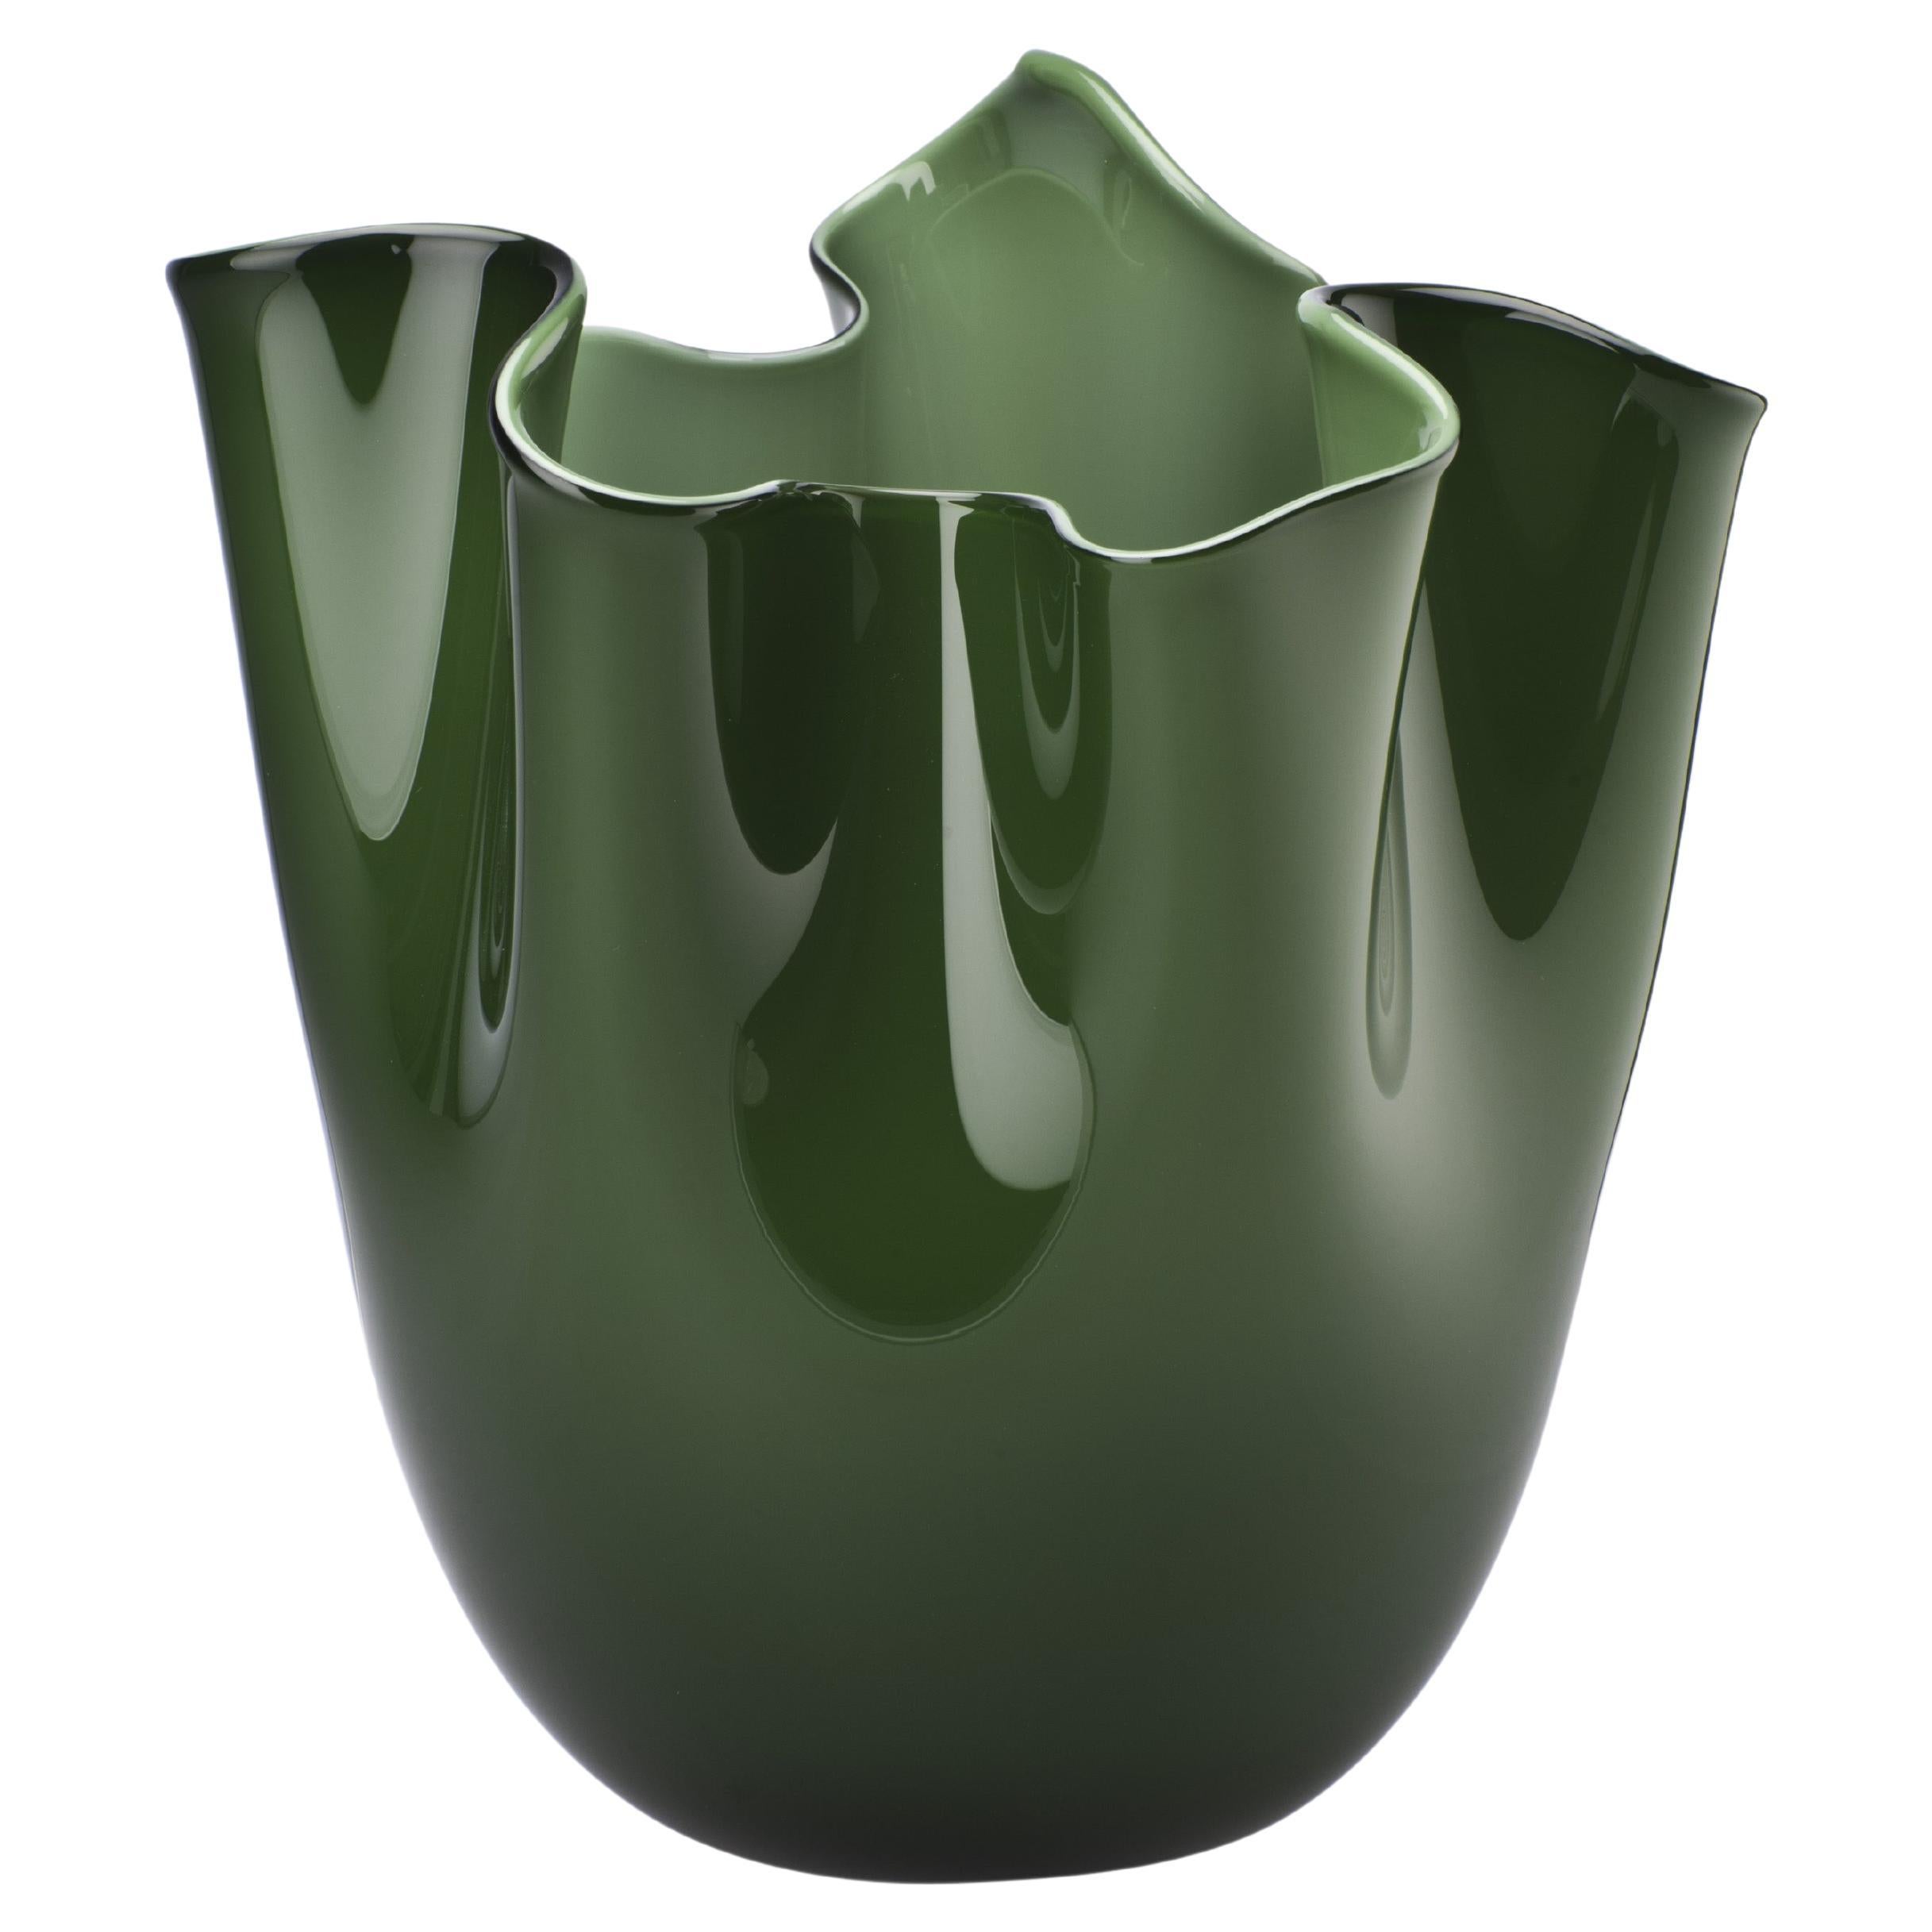 Venini Fazzoletto Opalino Small Vase in Apple Green Murano Glass